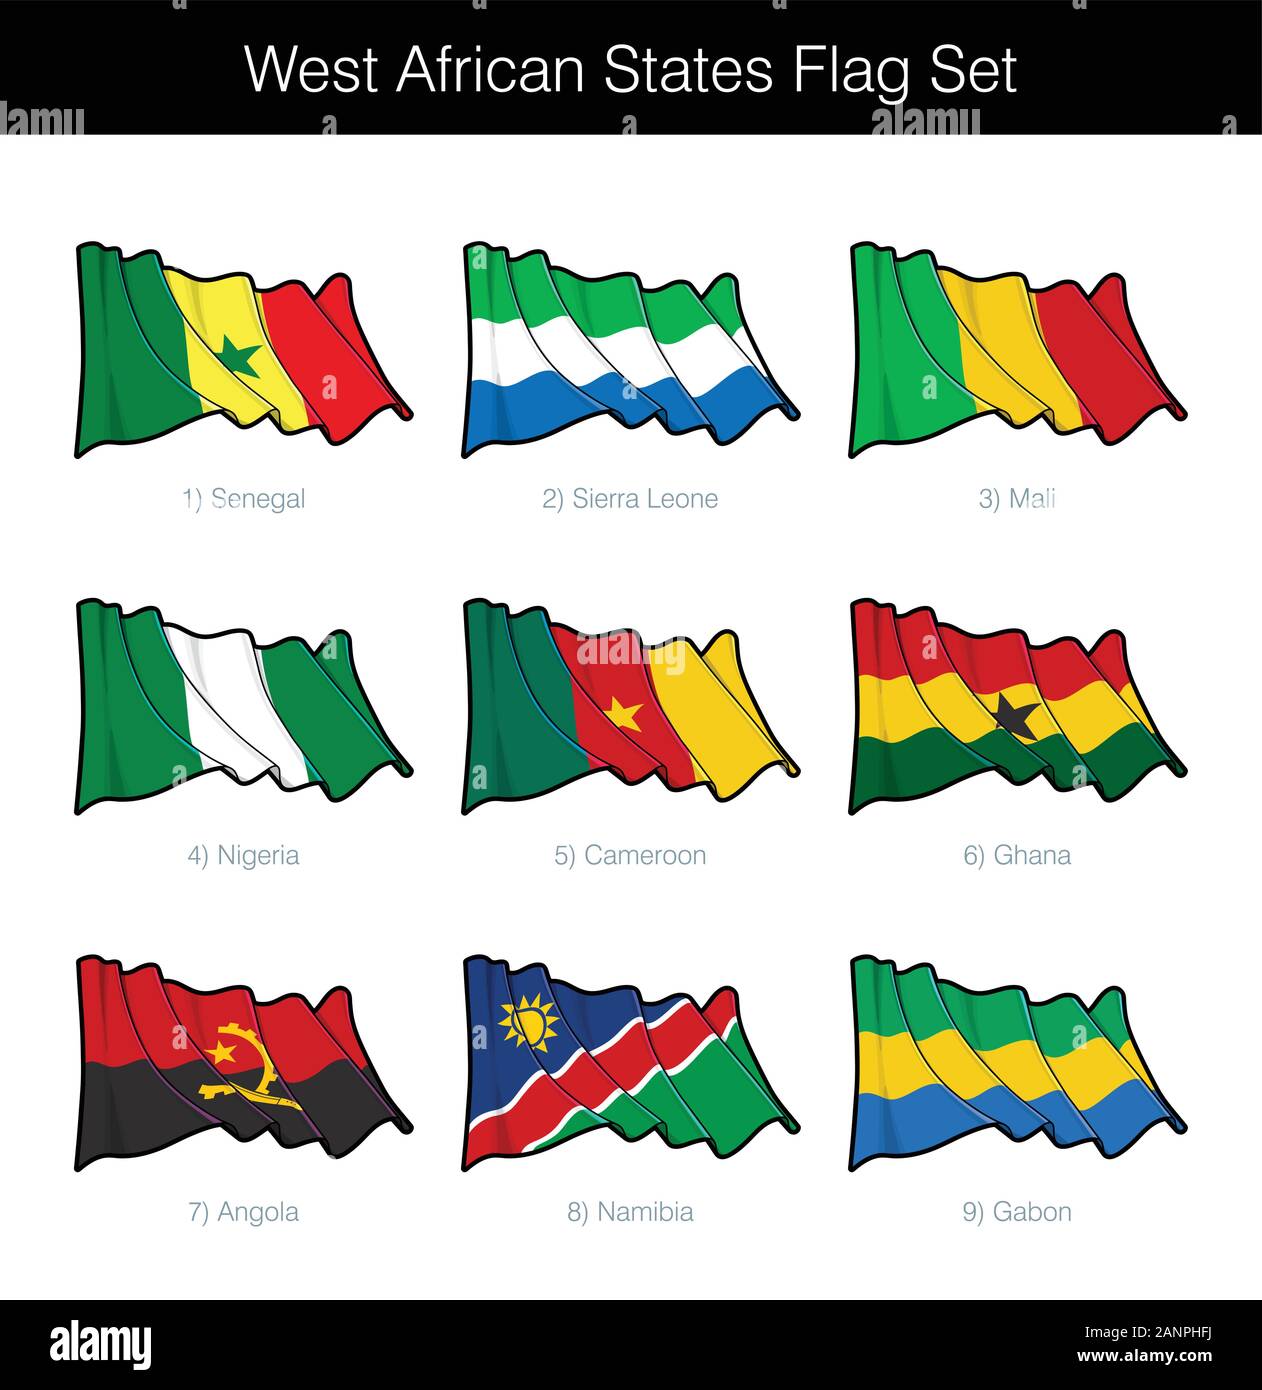 États d'Afrique de l'Ouest Waving Flag Set. L'ensemble comprend les drapeaux du Sénégal, Sierra Leone, Mali, Nigeria, Cameroun, Ghana, l'Angola, la Namibie et le Gabon. V Illustration de Vecteur